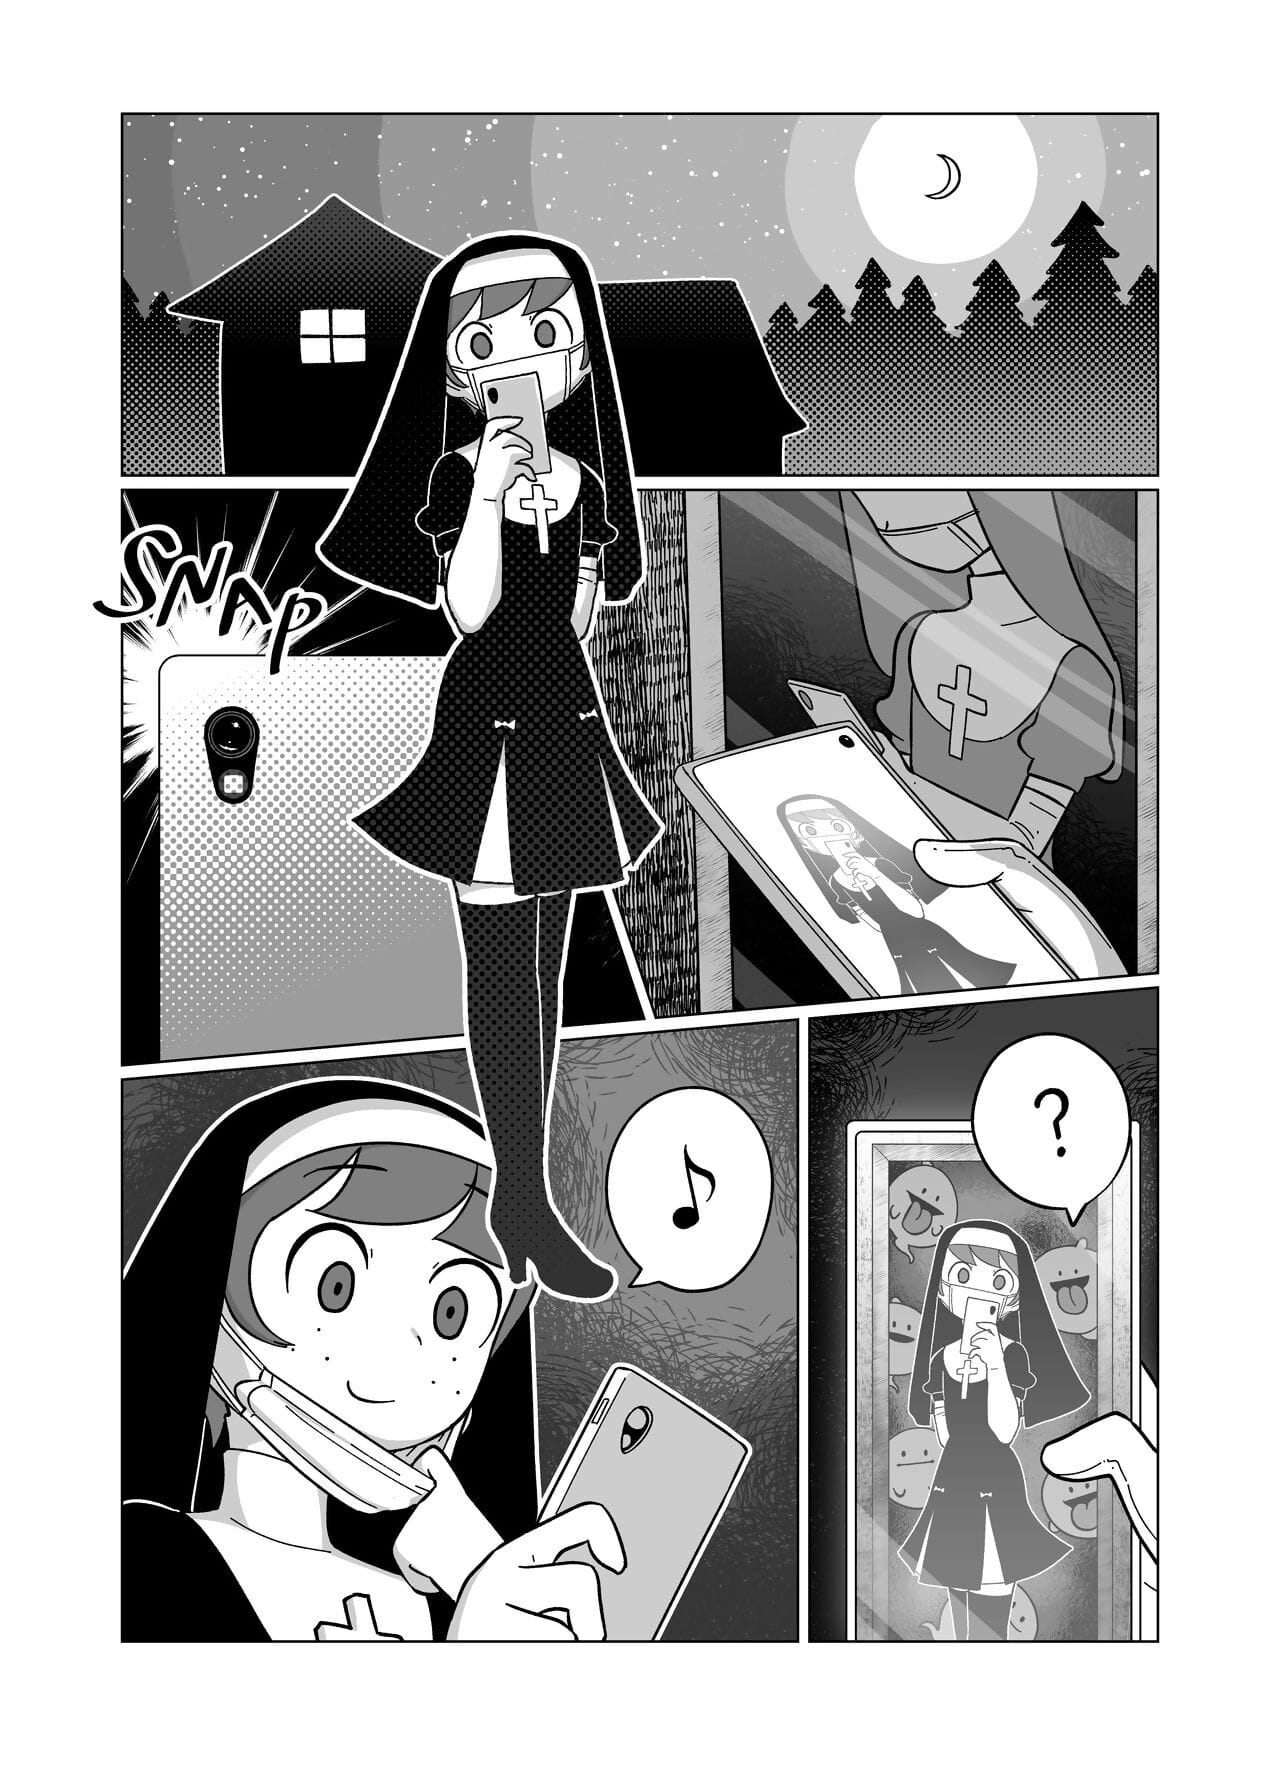 マリーナ - グルーピー コンボ コミック page 1